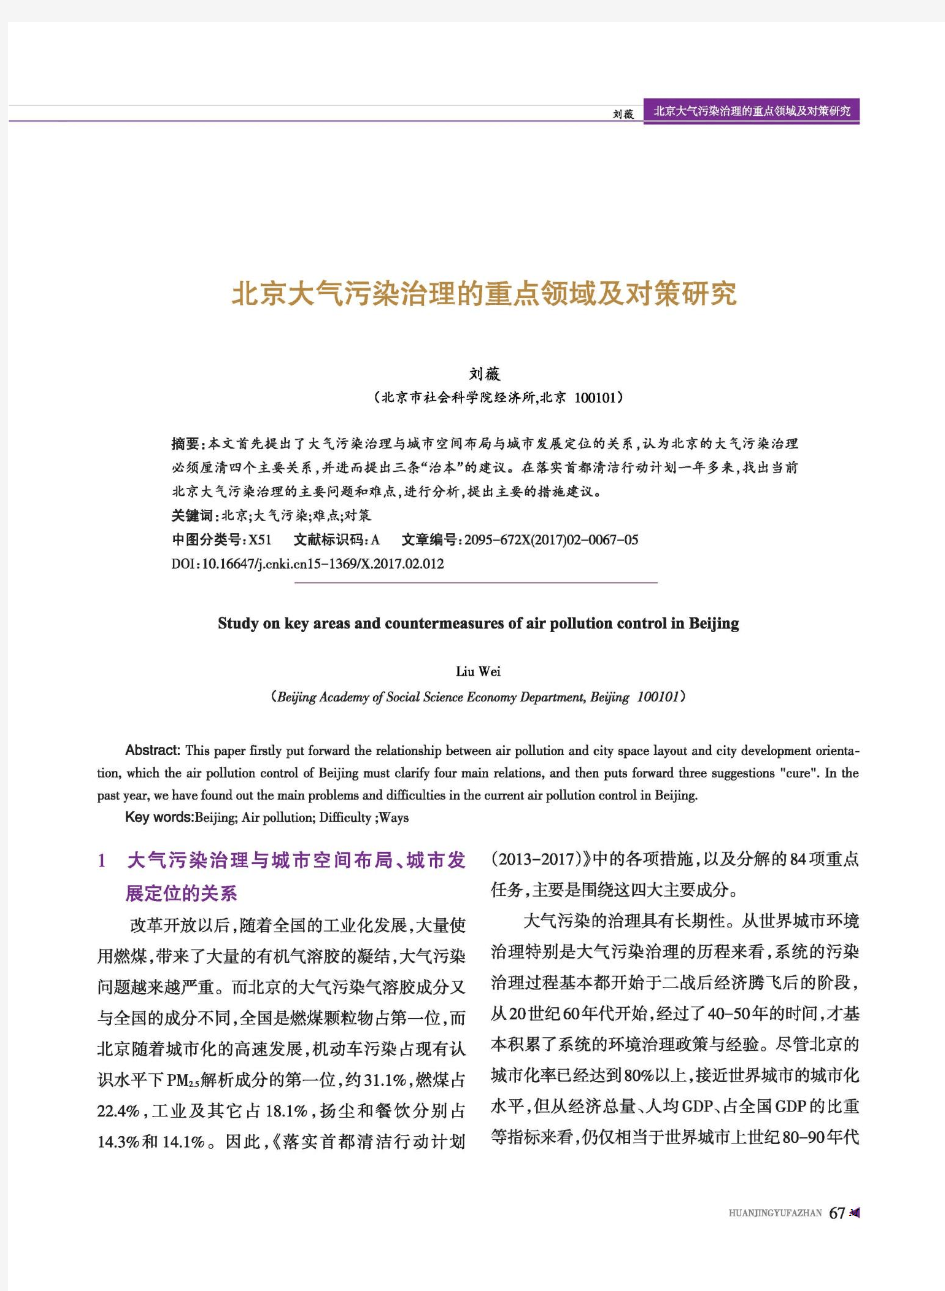 北京大气污染治理的重点领域及对策研究